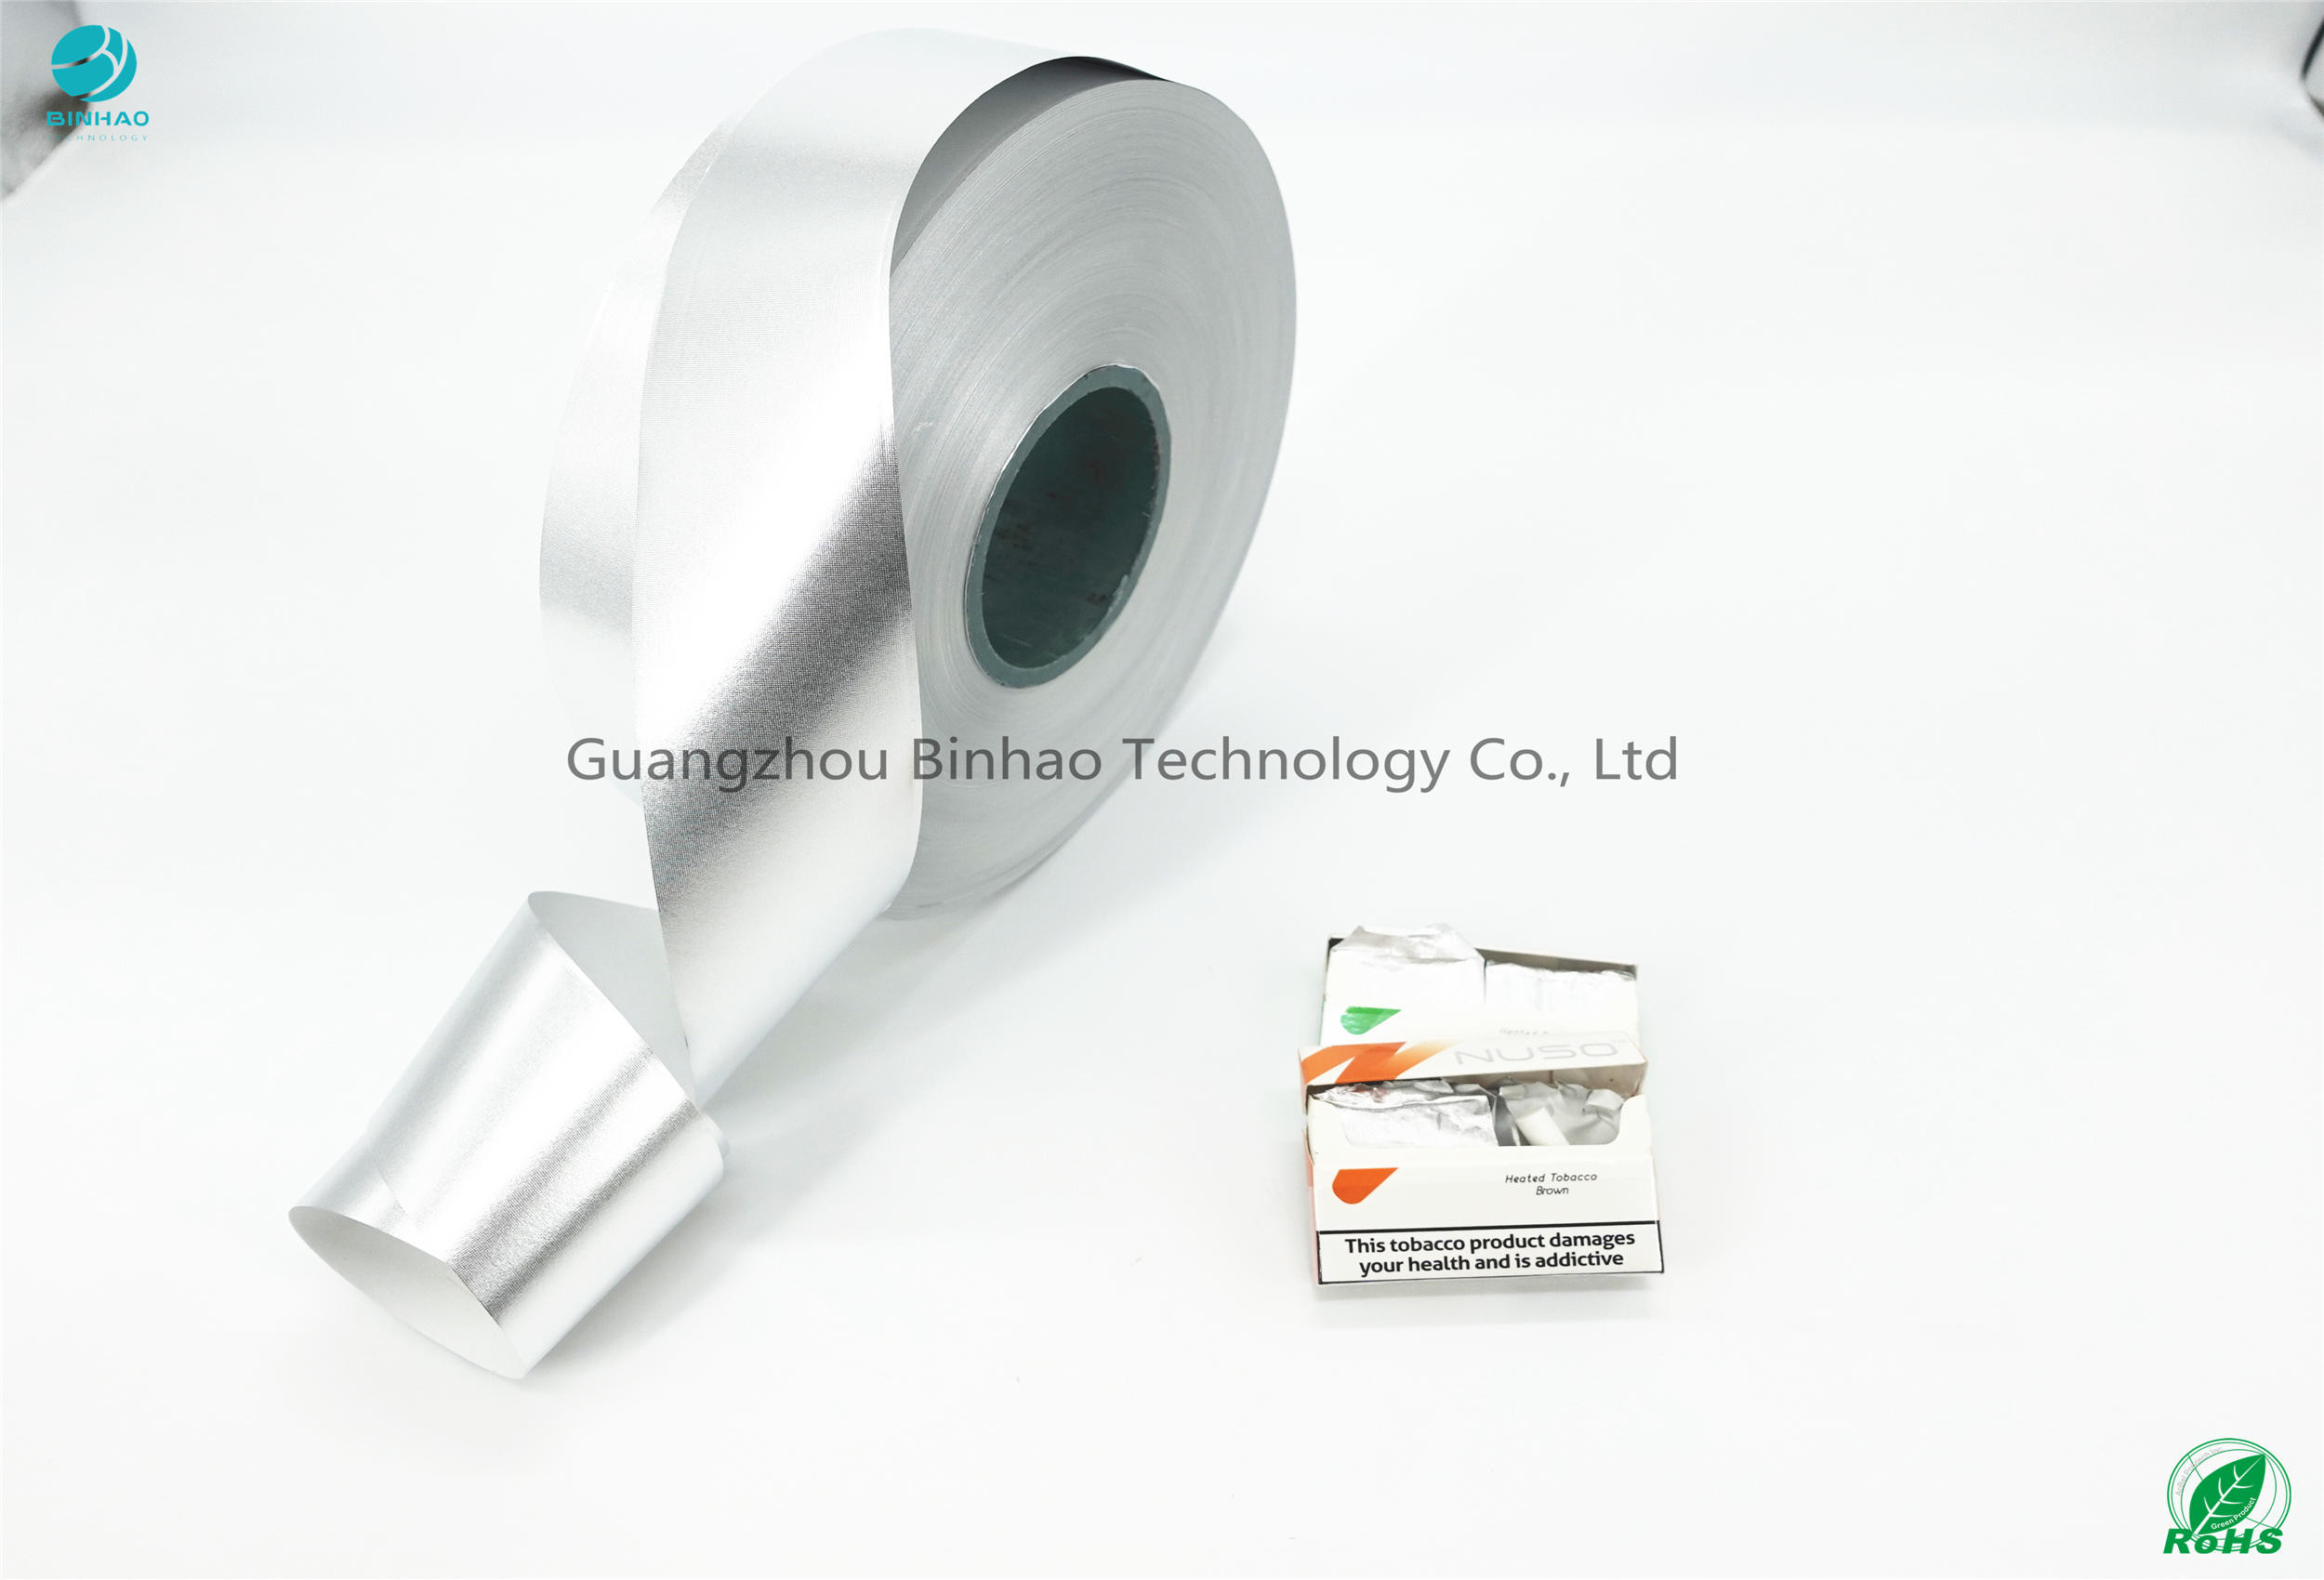 HNB E-papieros Opakowanie Grubość produktu Papier 42GSM Papier z folii aluminiowej